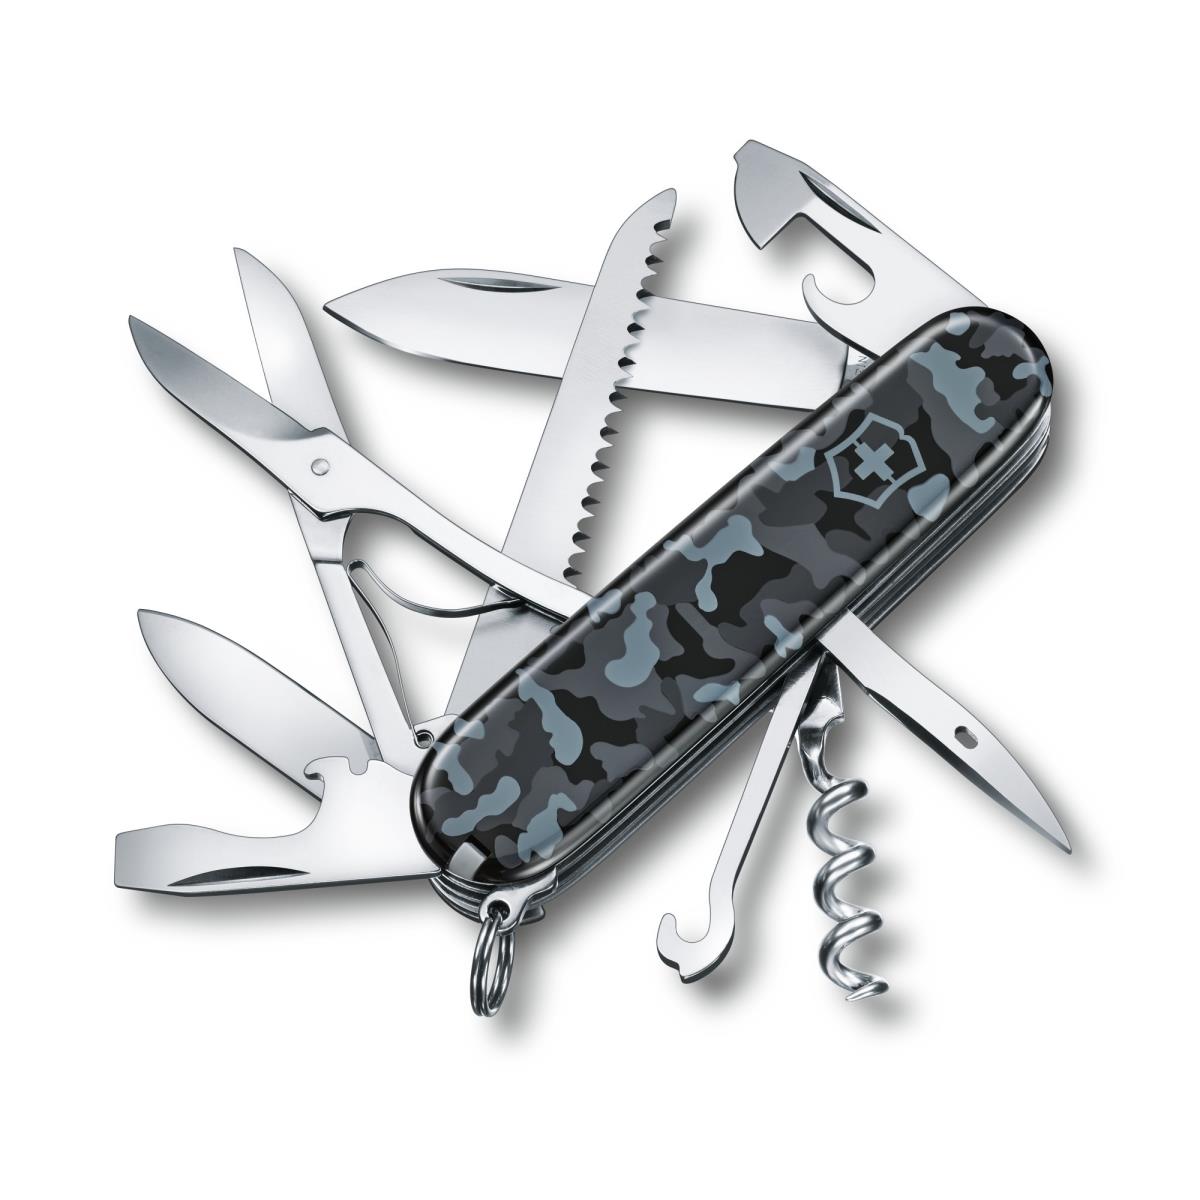 Нож 1.3713.942 складной, морской камуфляж VICTORINOX складной кухонный нож victorinox 6 7833 fb